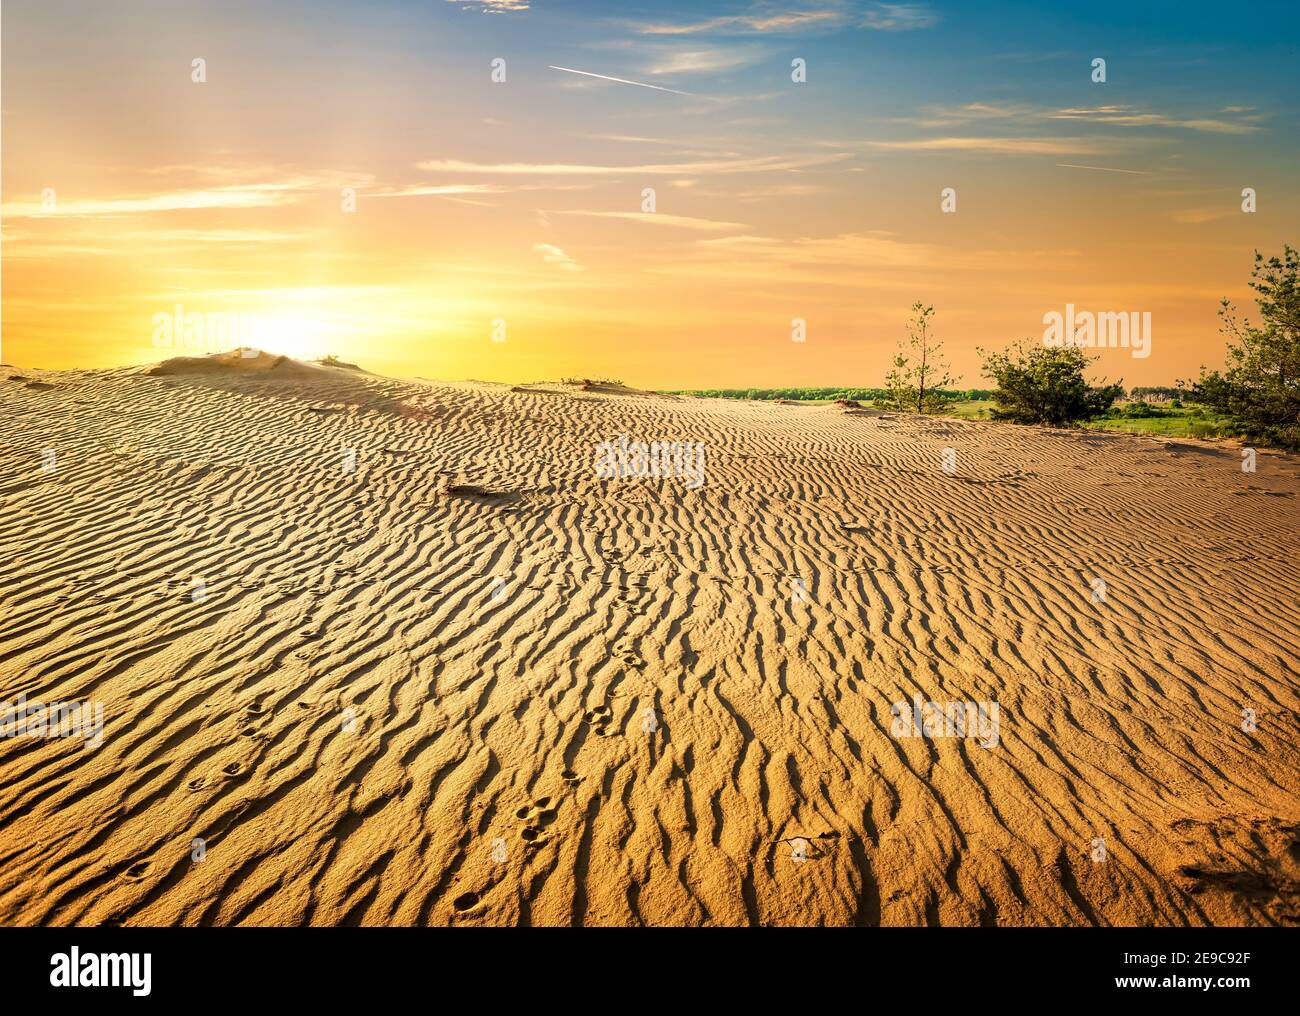 Sandy desert in Egypt at the sunset. Stock Photo